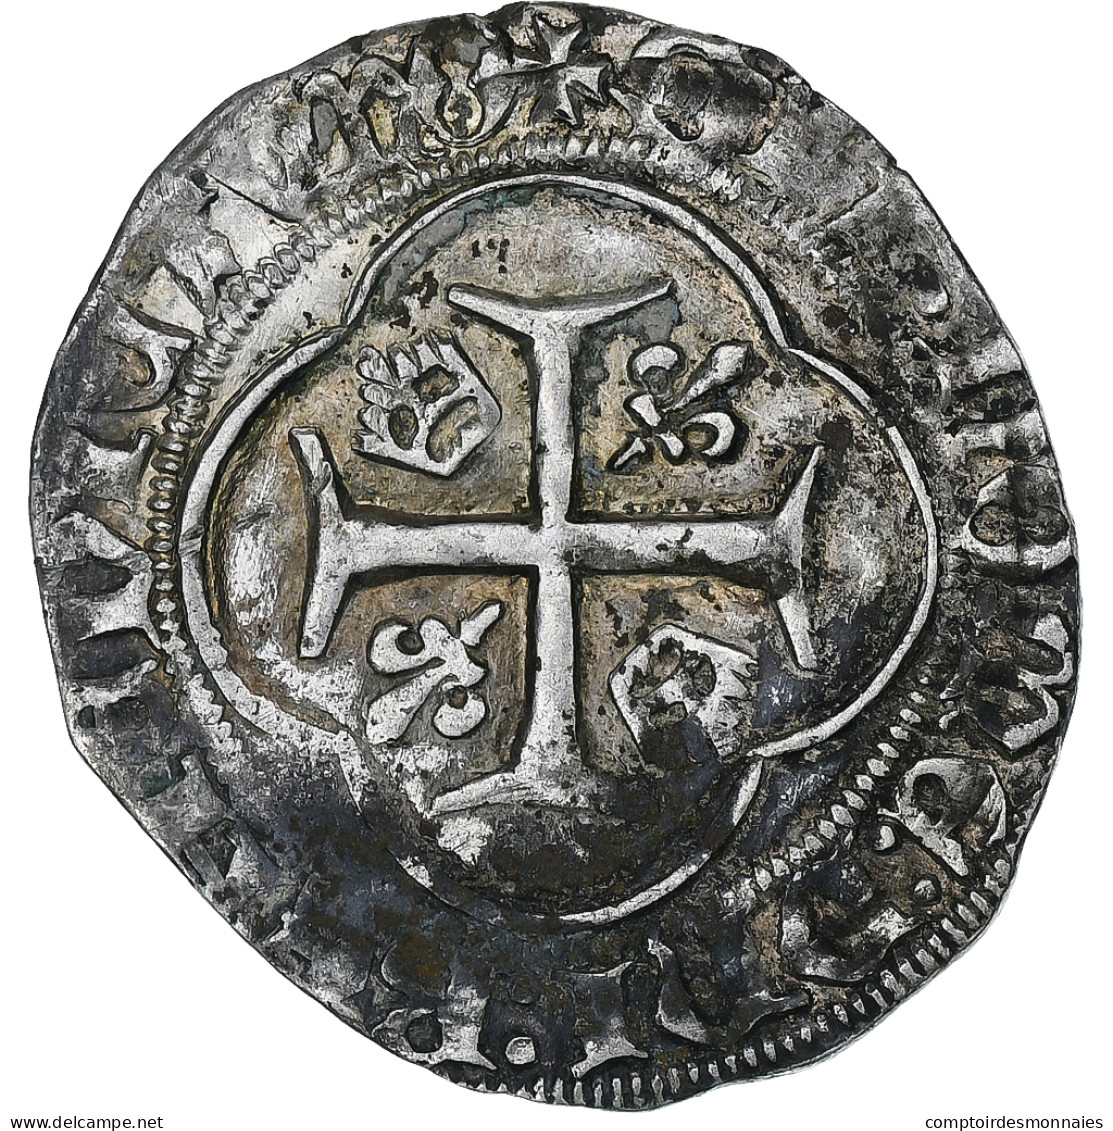 France, Charles VII, Blanc à La Couronne, 1436-1461, Orléans, Billon, TTB - 1422-1461 Charles VII Le Victorieux